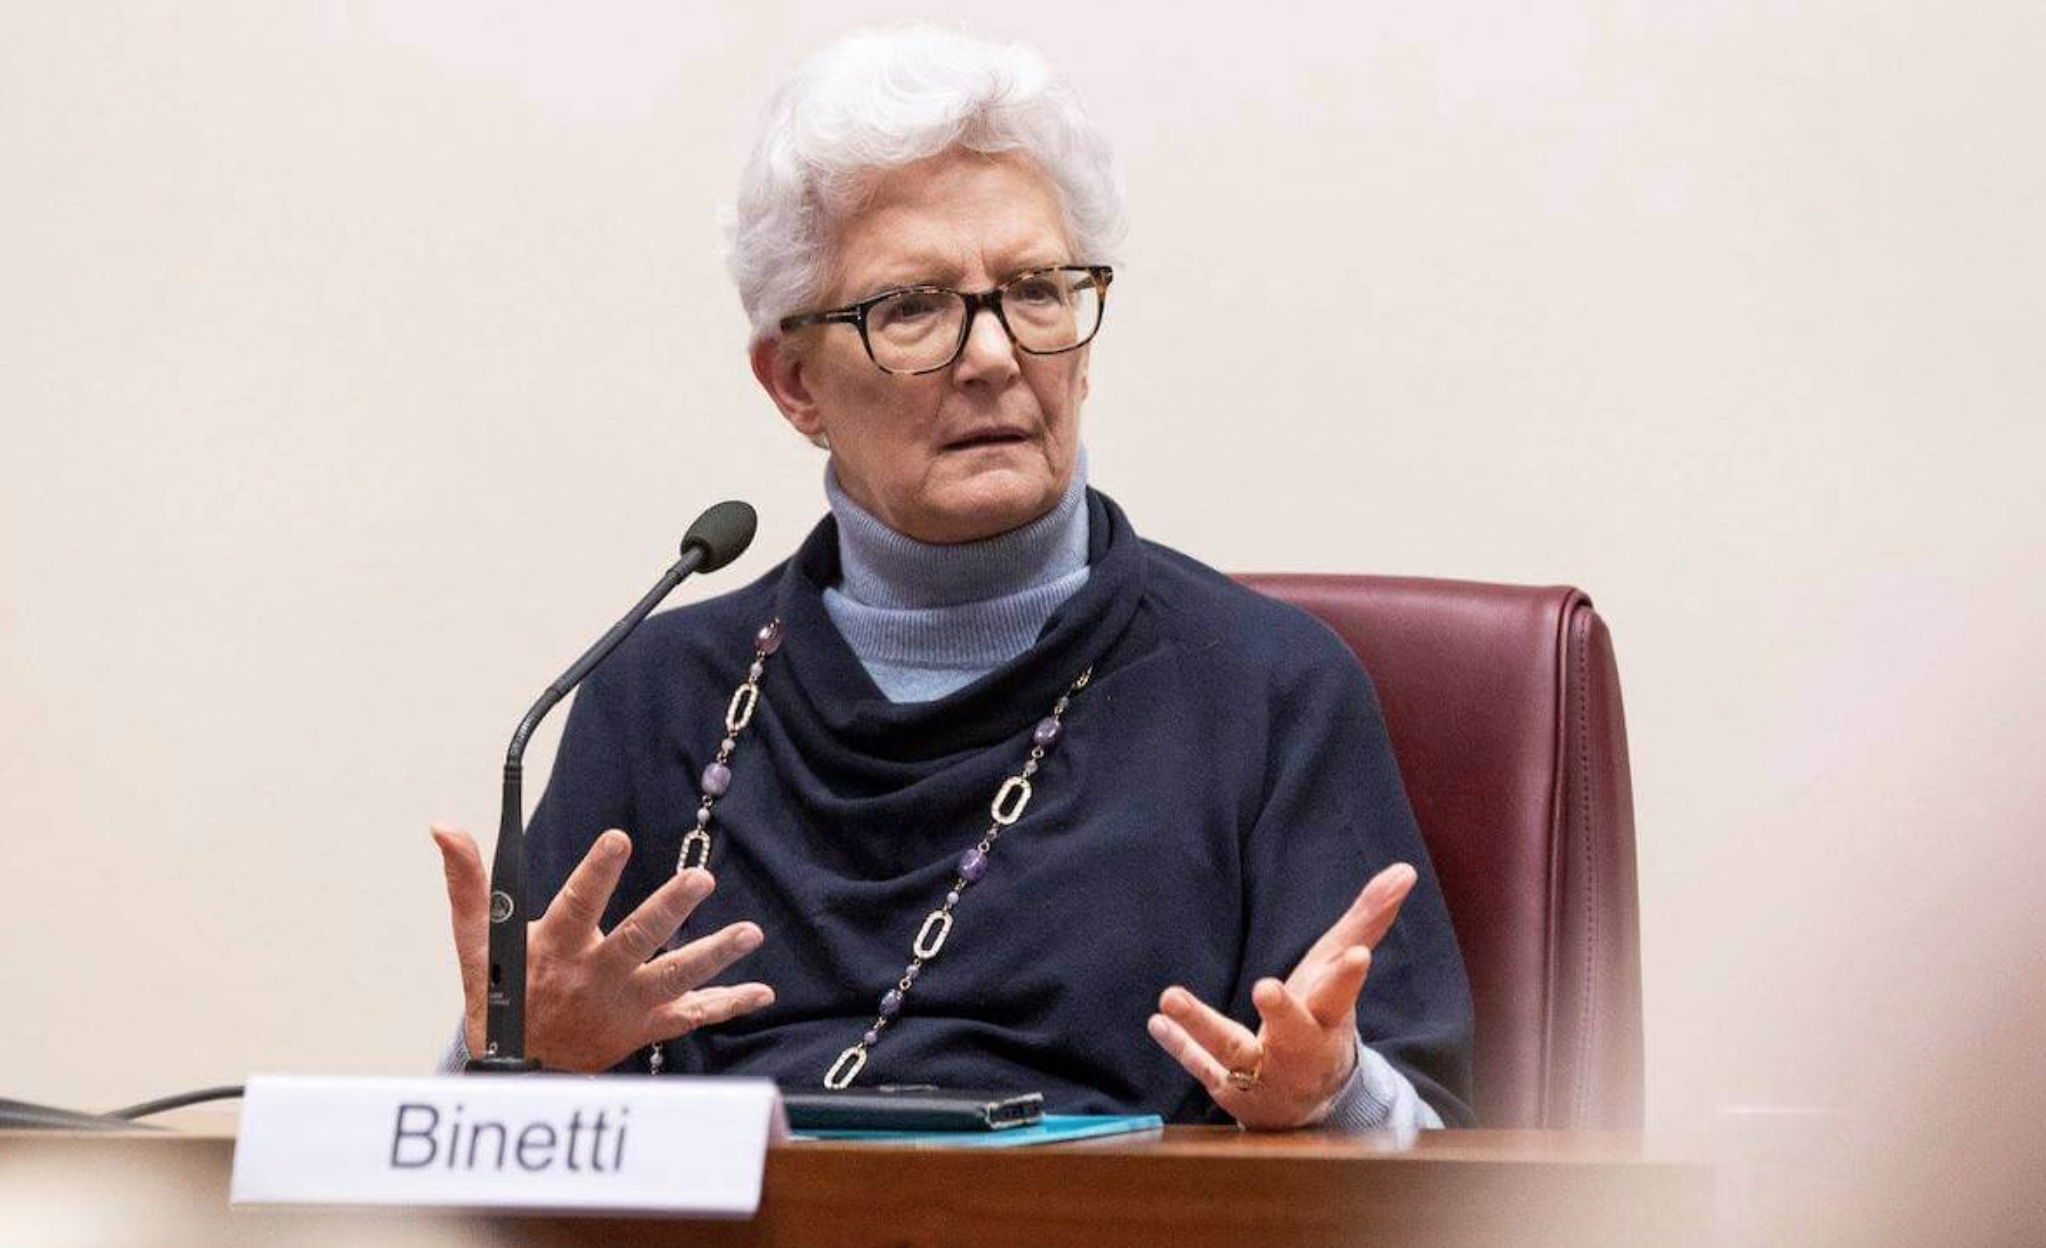 La senatrice Binetti (FI): «La vera applicazione della legge 194 eviterebbe molti aborti» 1